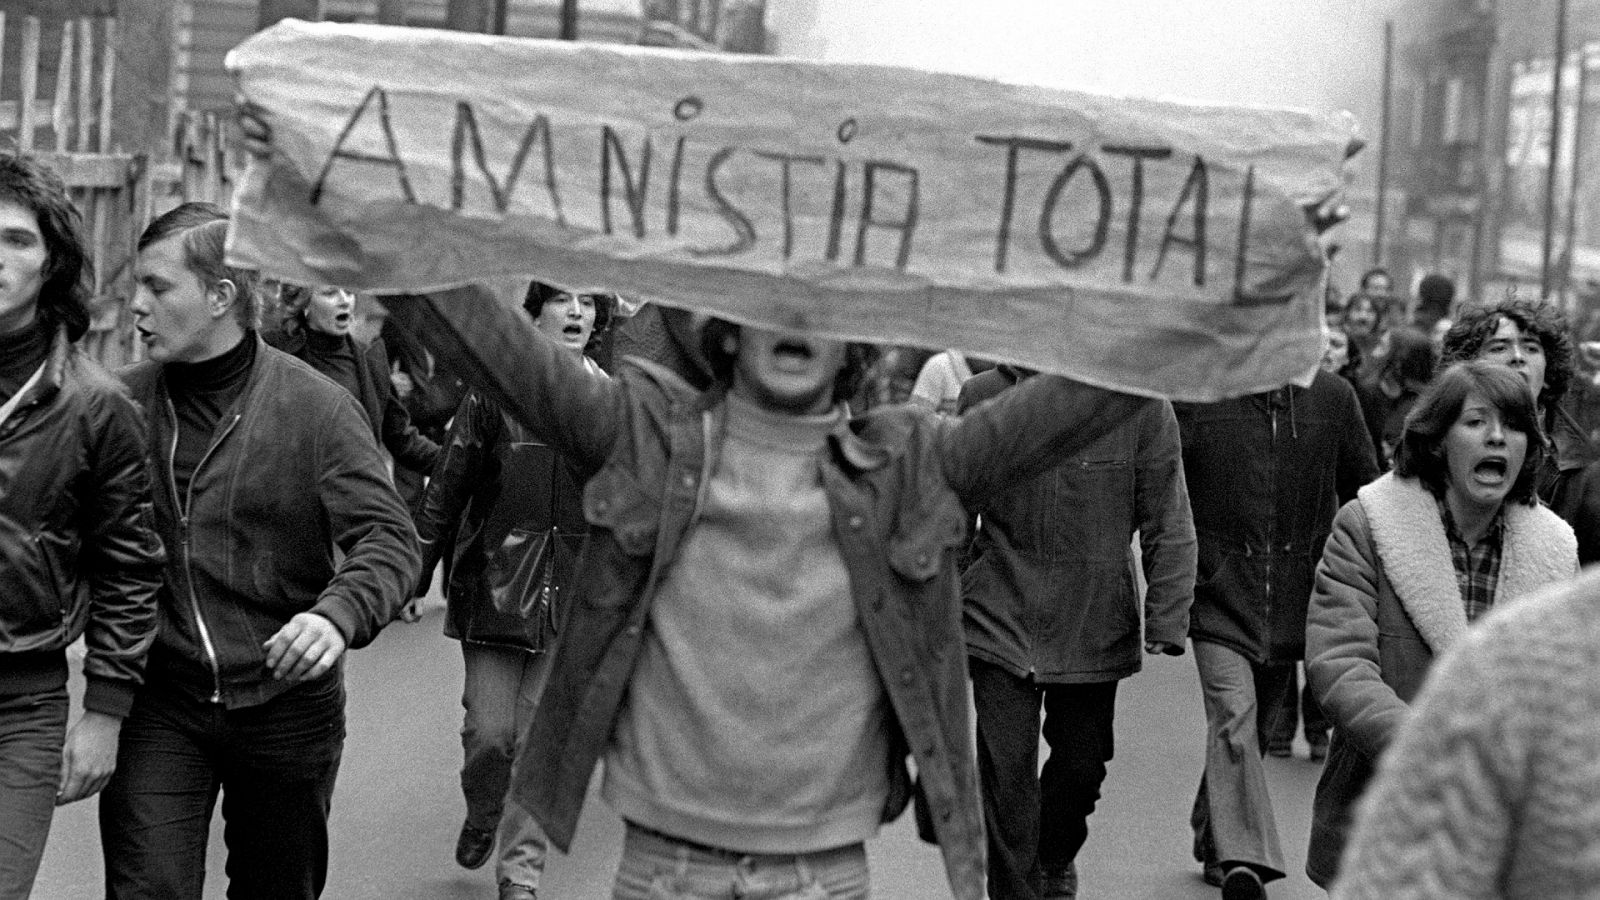 Imagen de una manifestación en Madrid en el año 1977